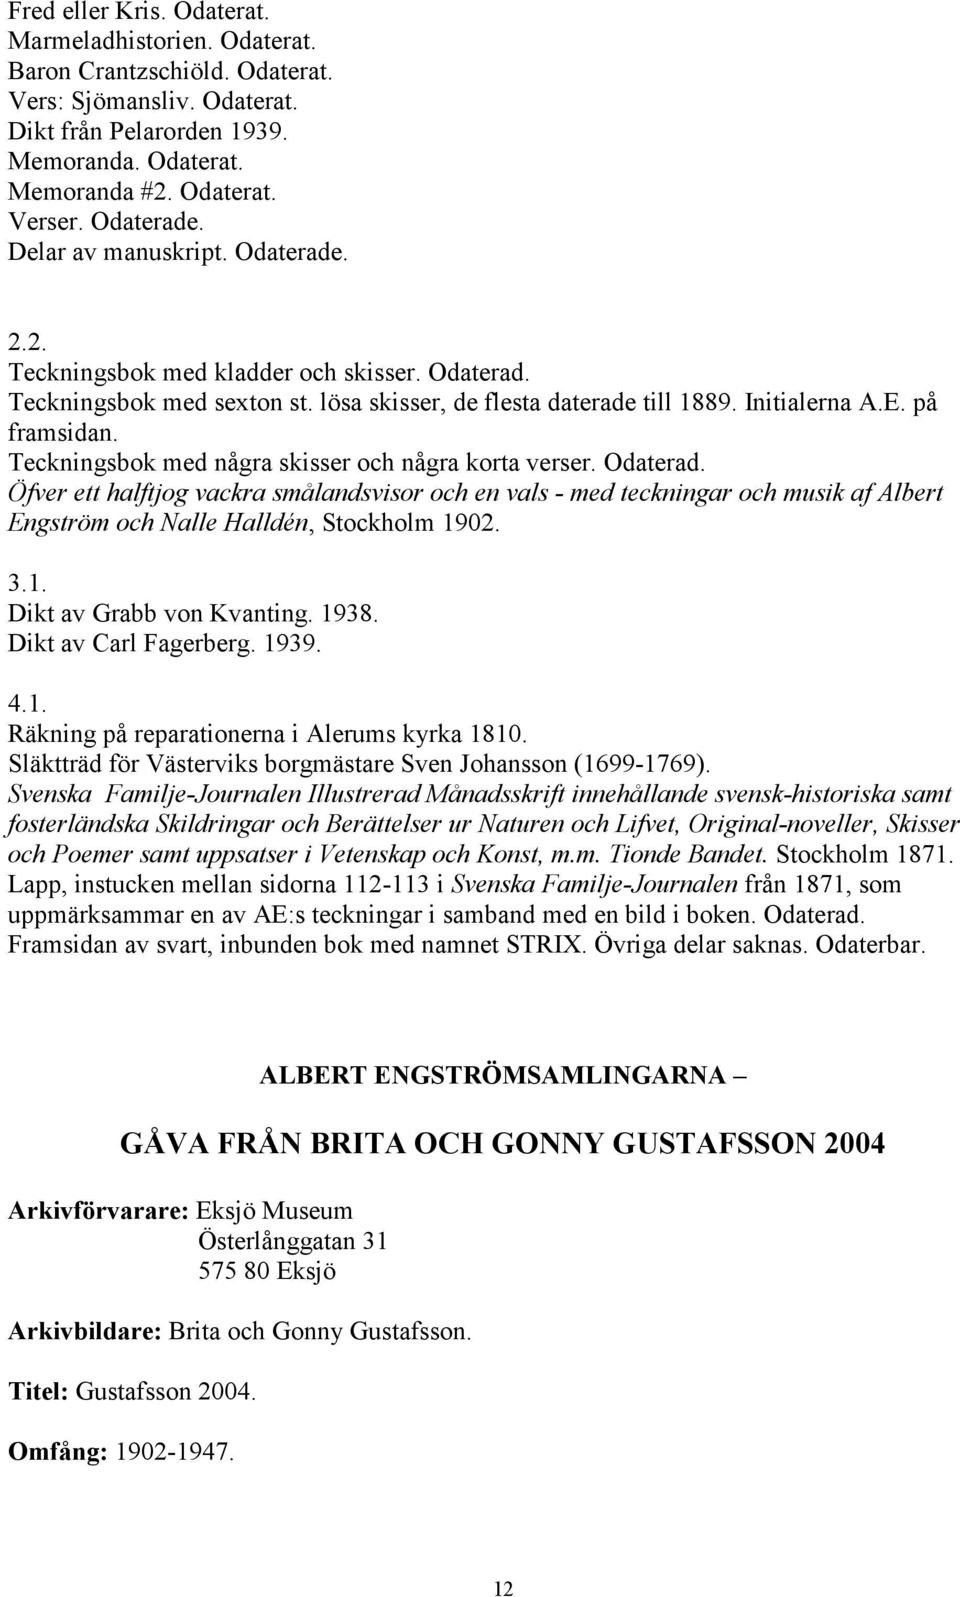 Teckningsbok med några skisser och några korta verser. Odaterad. Öfver ett halftjog vackra smålandsvisor och en vals - med teckningar och musik af Albert Engström och Nalle Halldén, Stockholm 1902. 3.